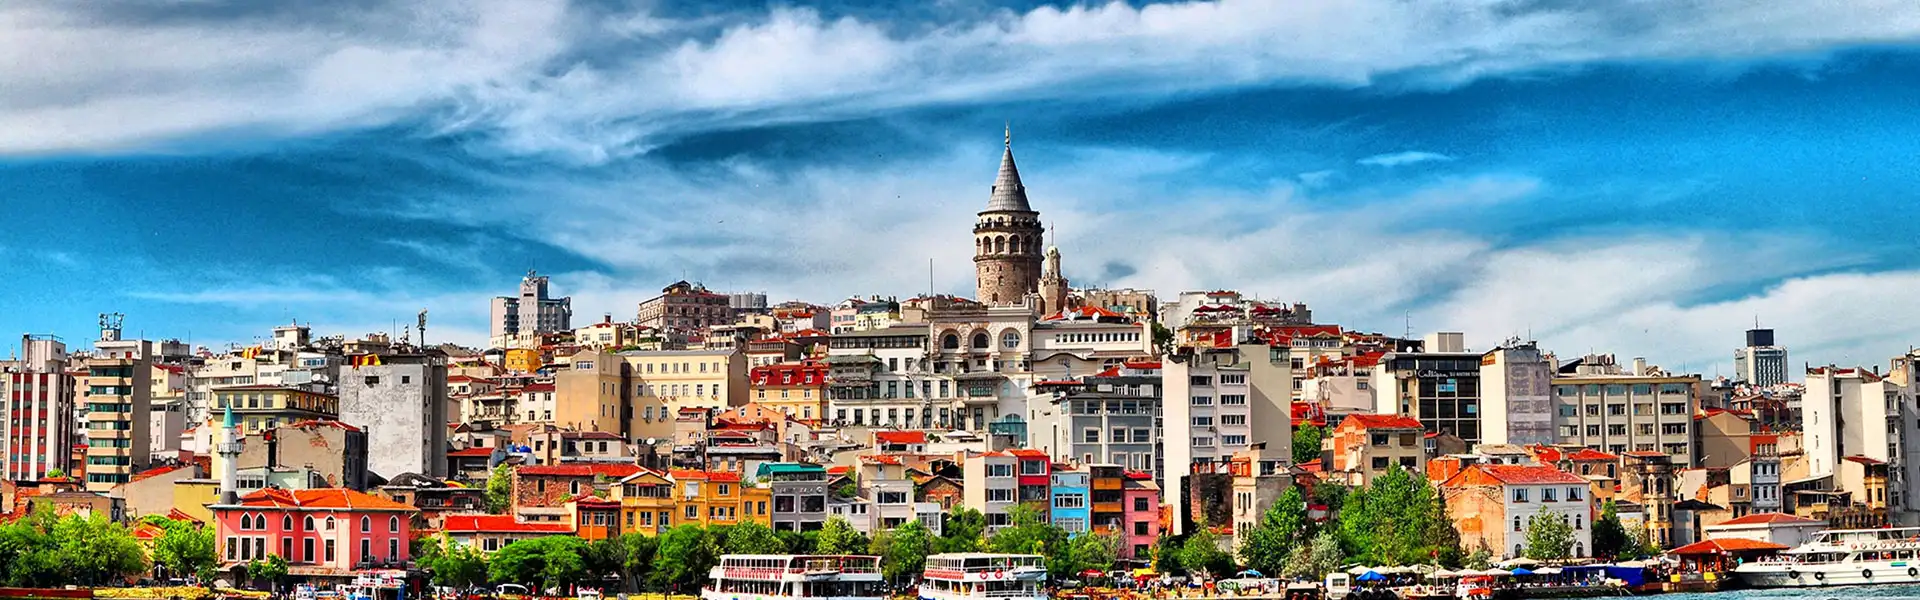 ارزانترین تور 5روز استانبول